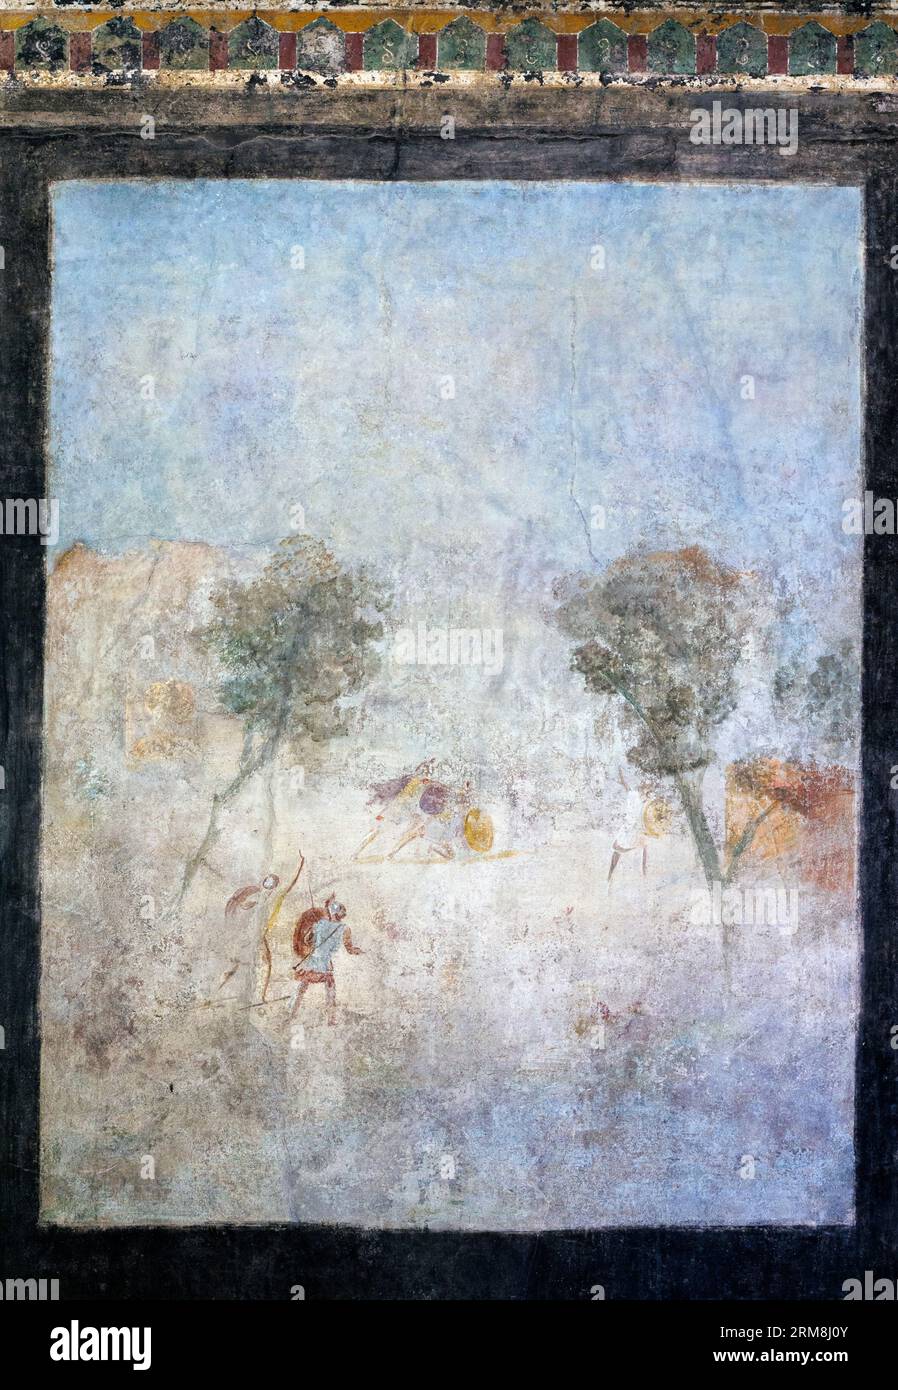 Archäologische Stätte Pompeji, Kampanien, Italien. Fresko eines Duells oder einer Kampfszene. Casa del Frutteto. Orchard House. Pompeji, Herculaneum und Torre Stockfoto